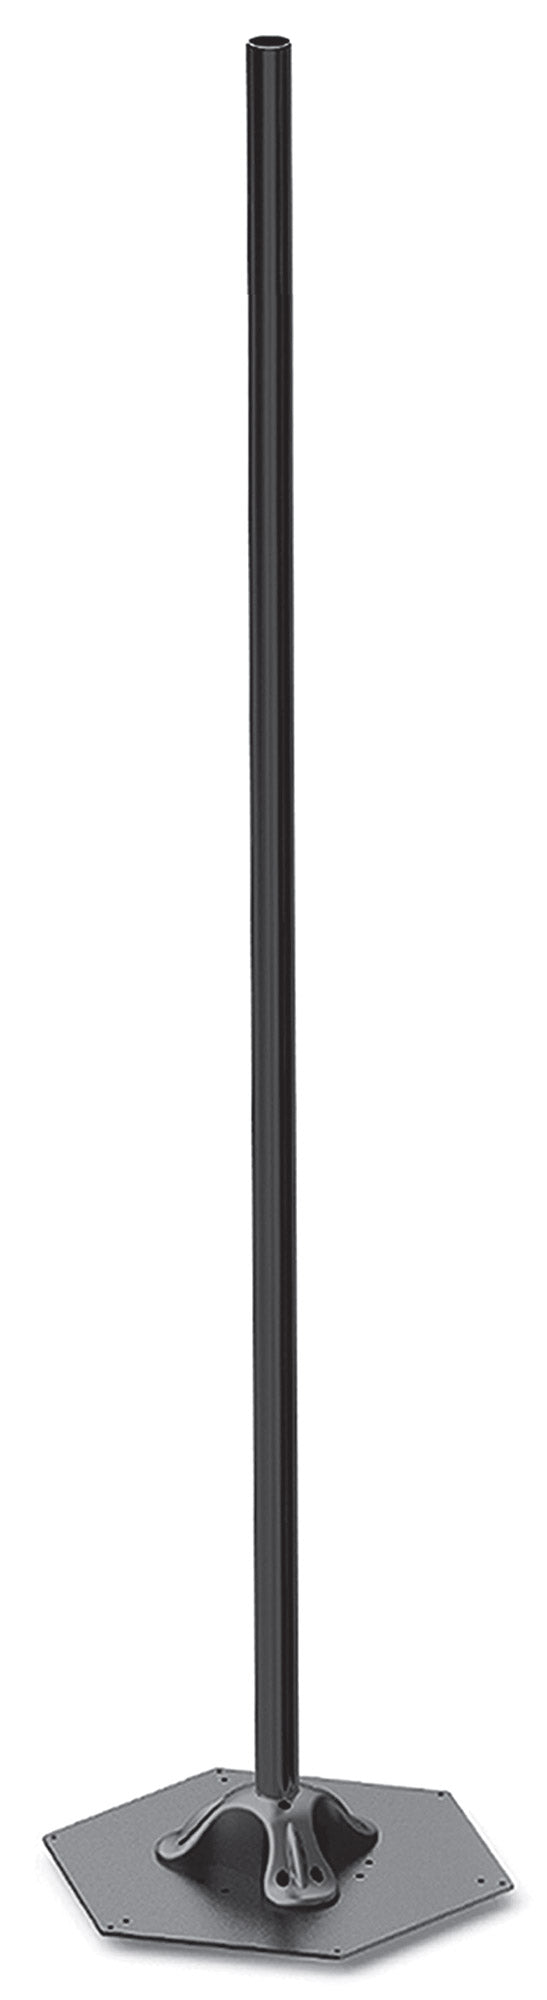 Elegance Pole H214 cm pour Lampes Chauffantes Electriques Moel 4464 Noir online